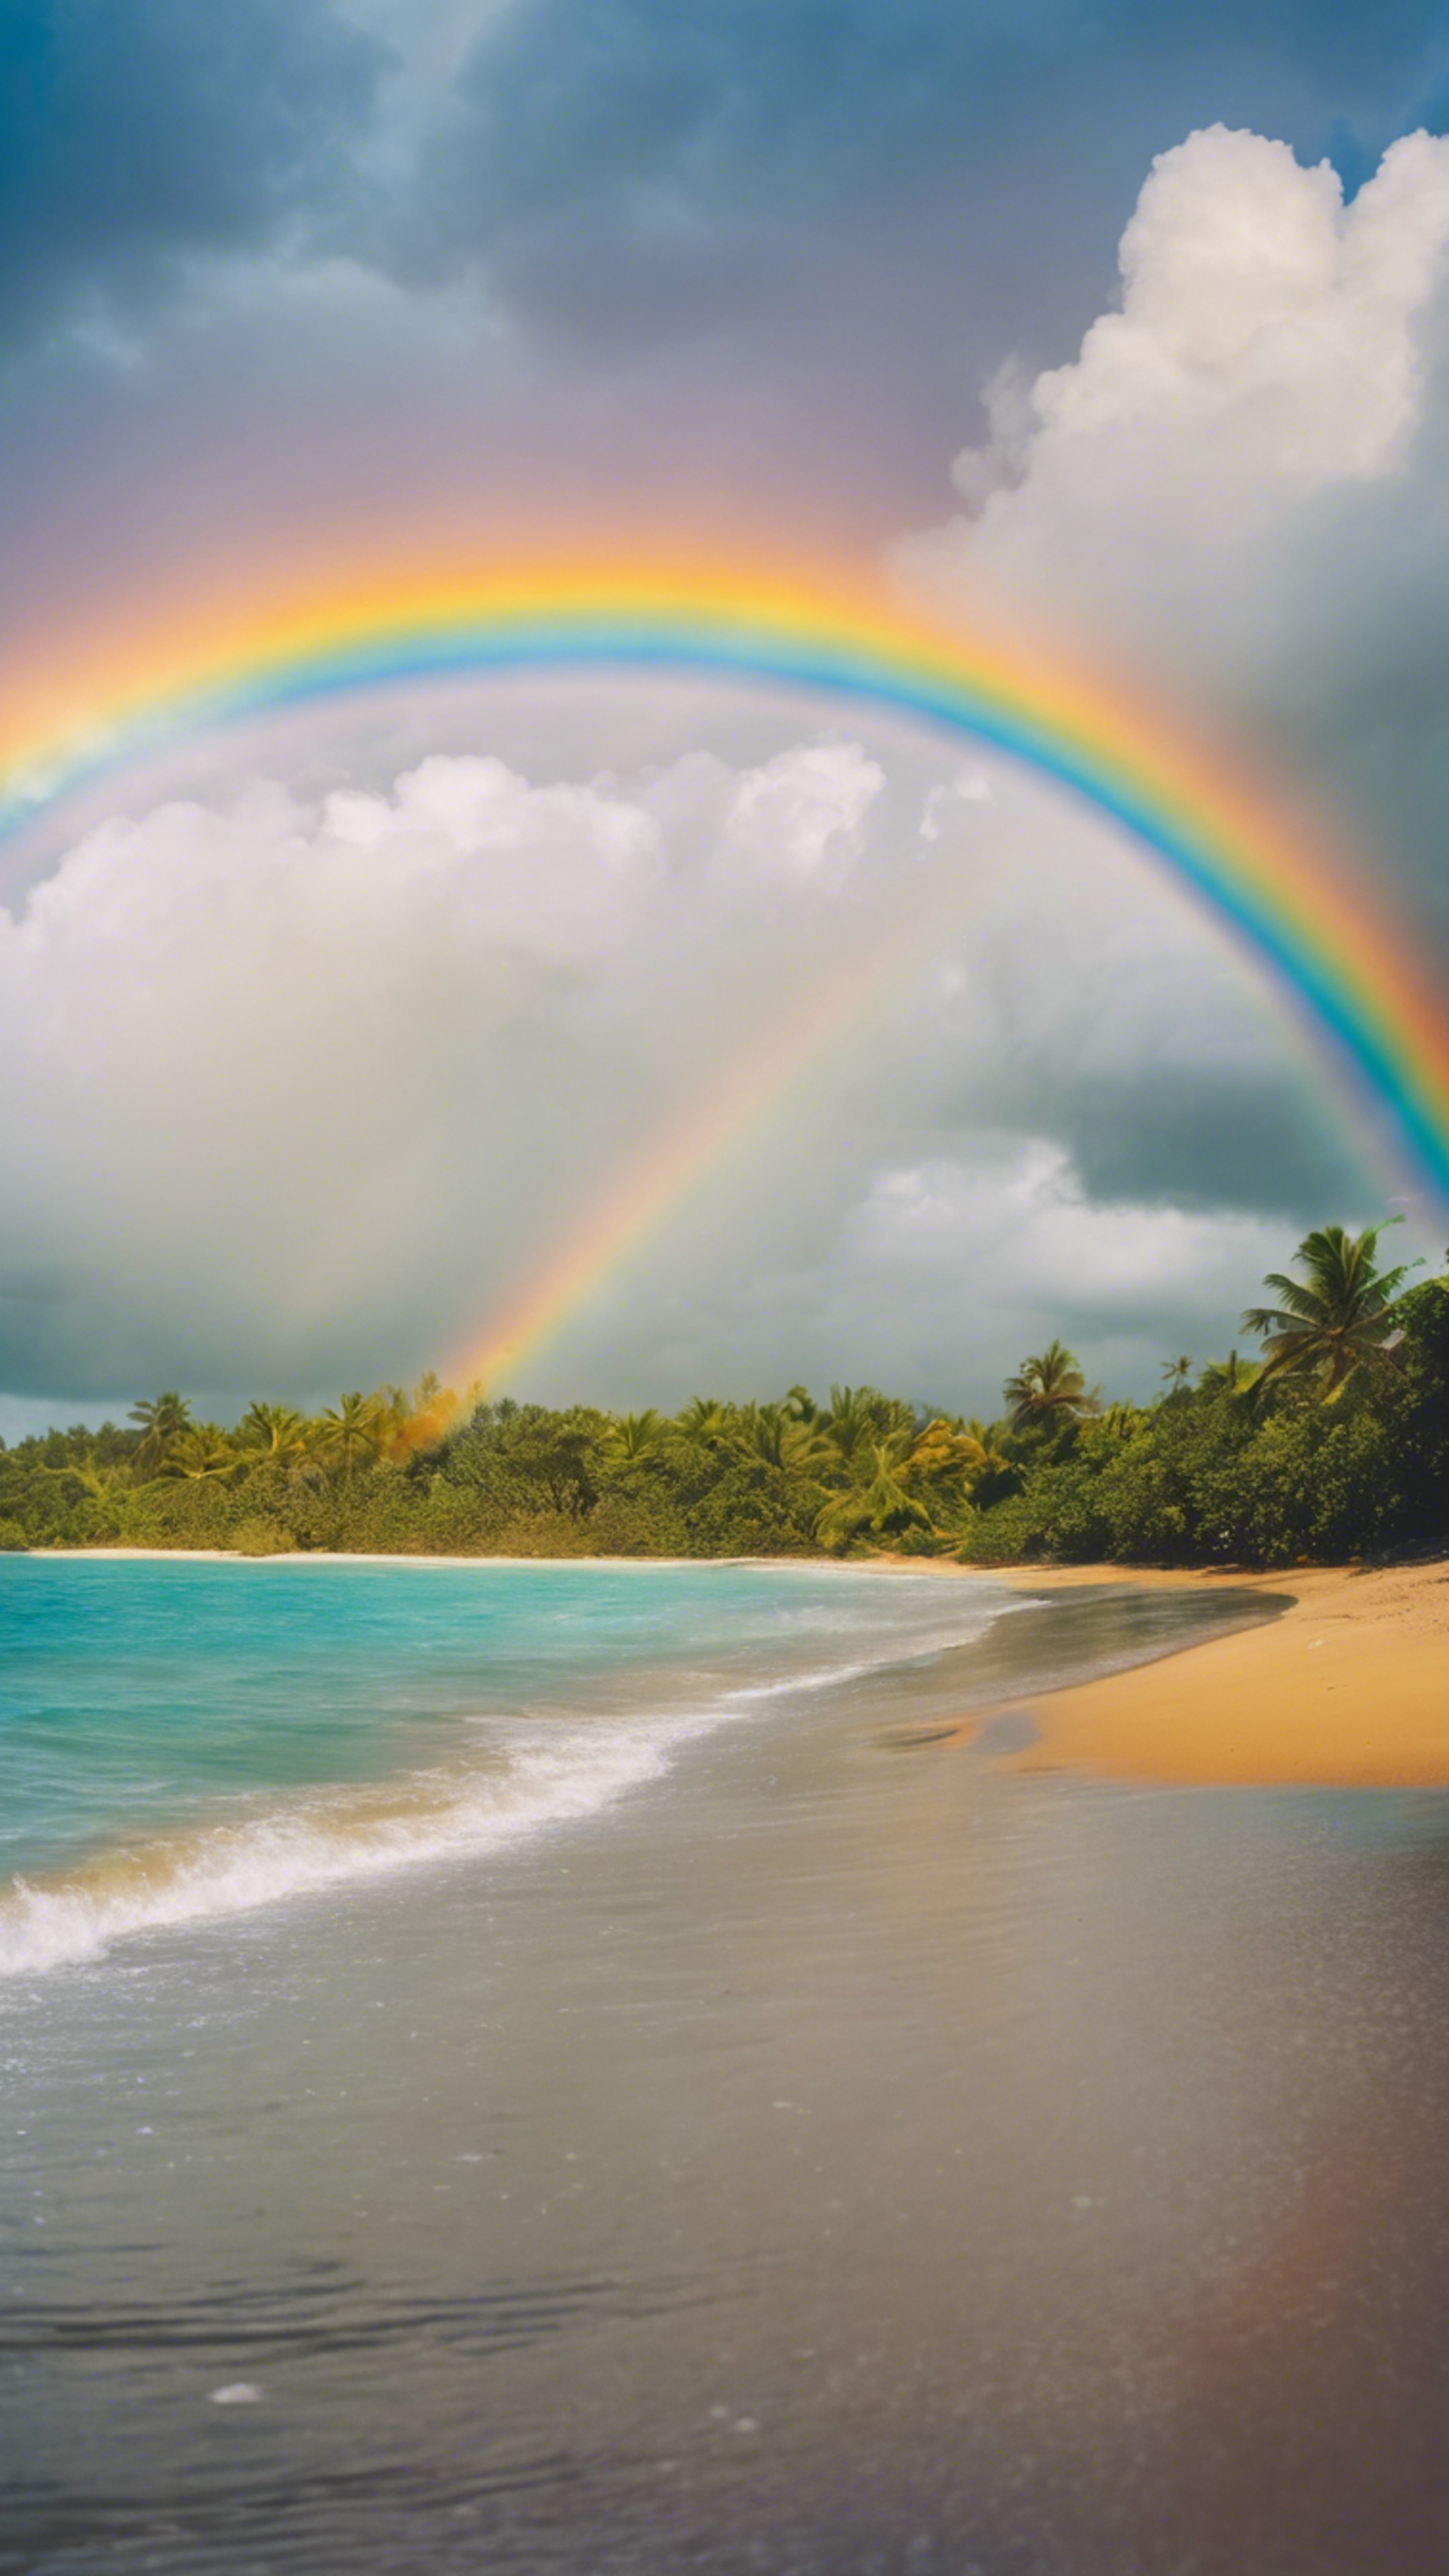 Vivid rainbow arcing across the sky after a rainfall at a tropical beach. Sfondo[d3854ca165cf432a9c18]